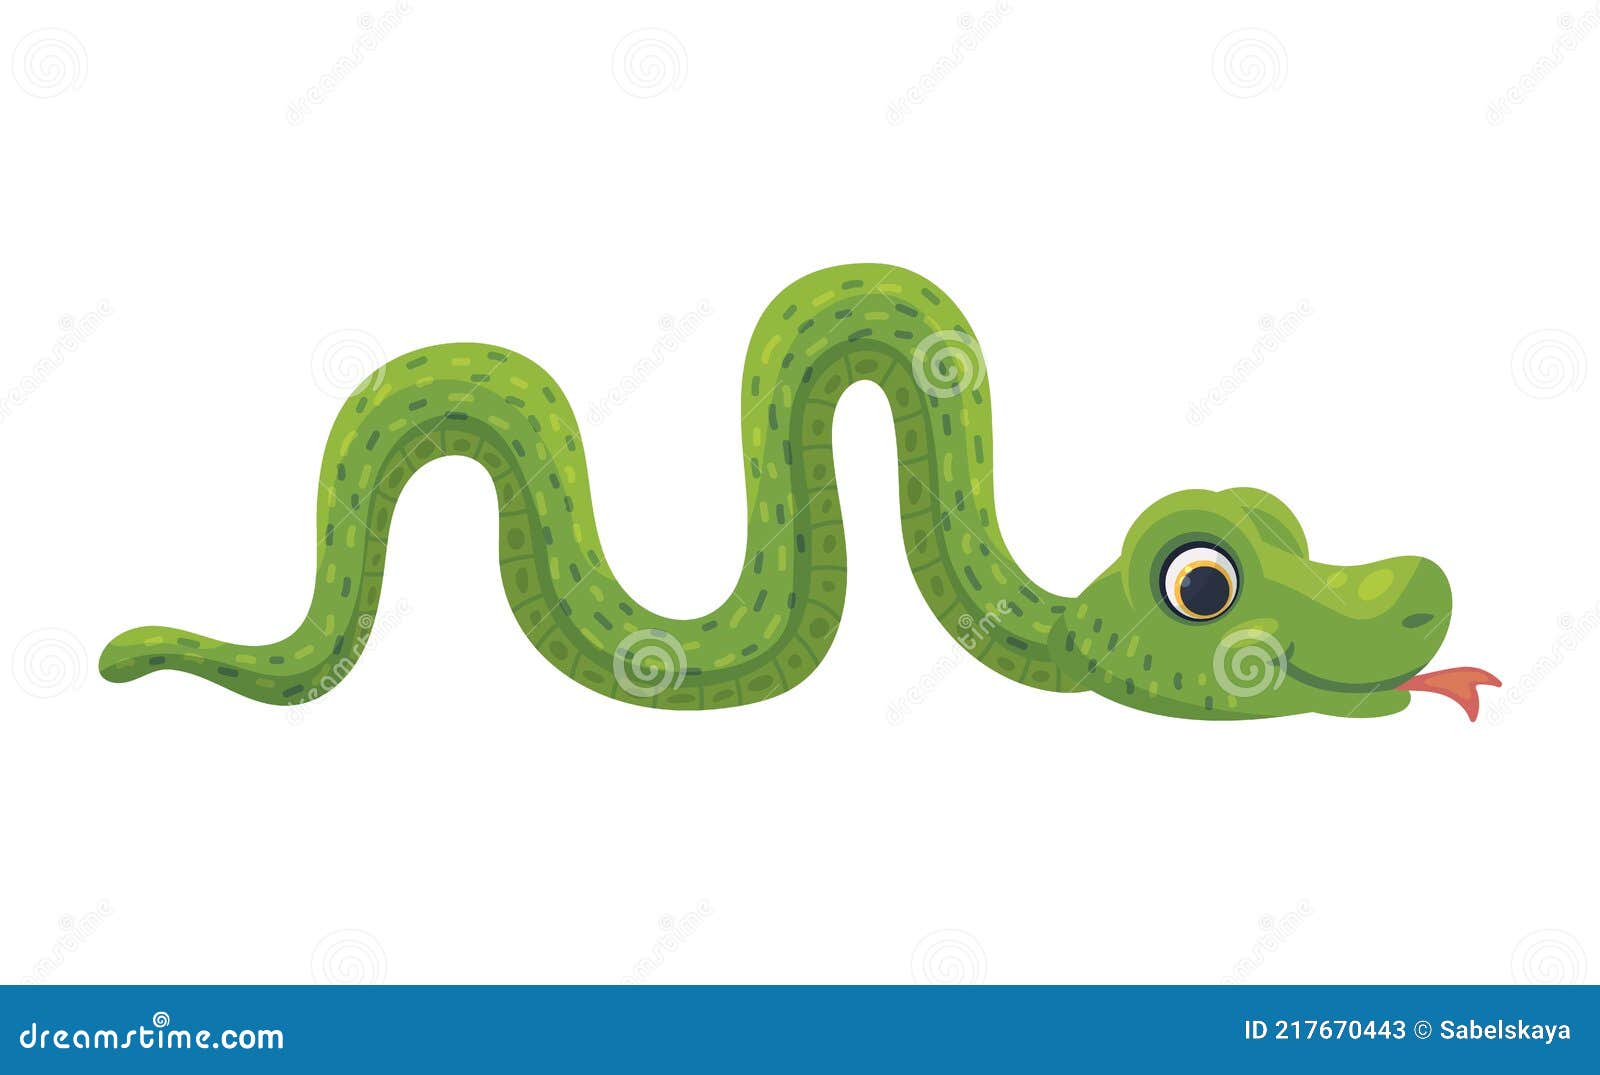 Desenho de cobra verde fofinho